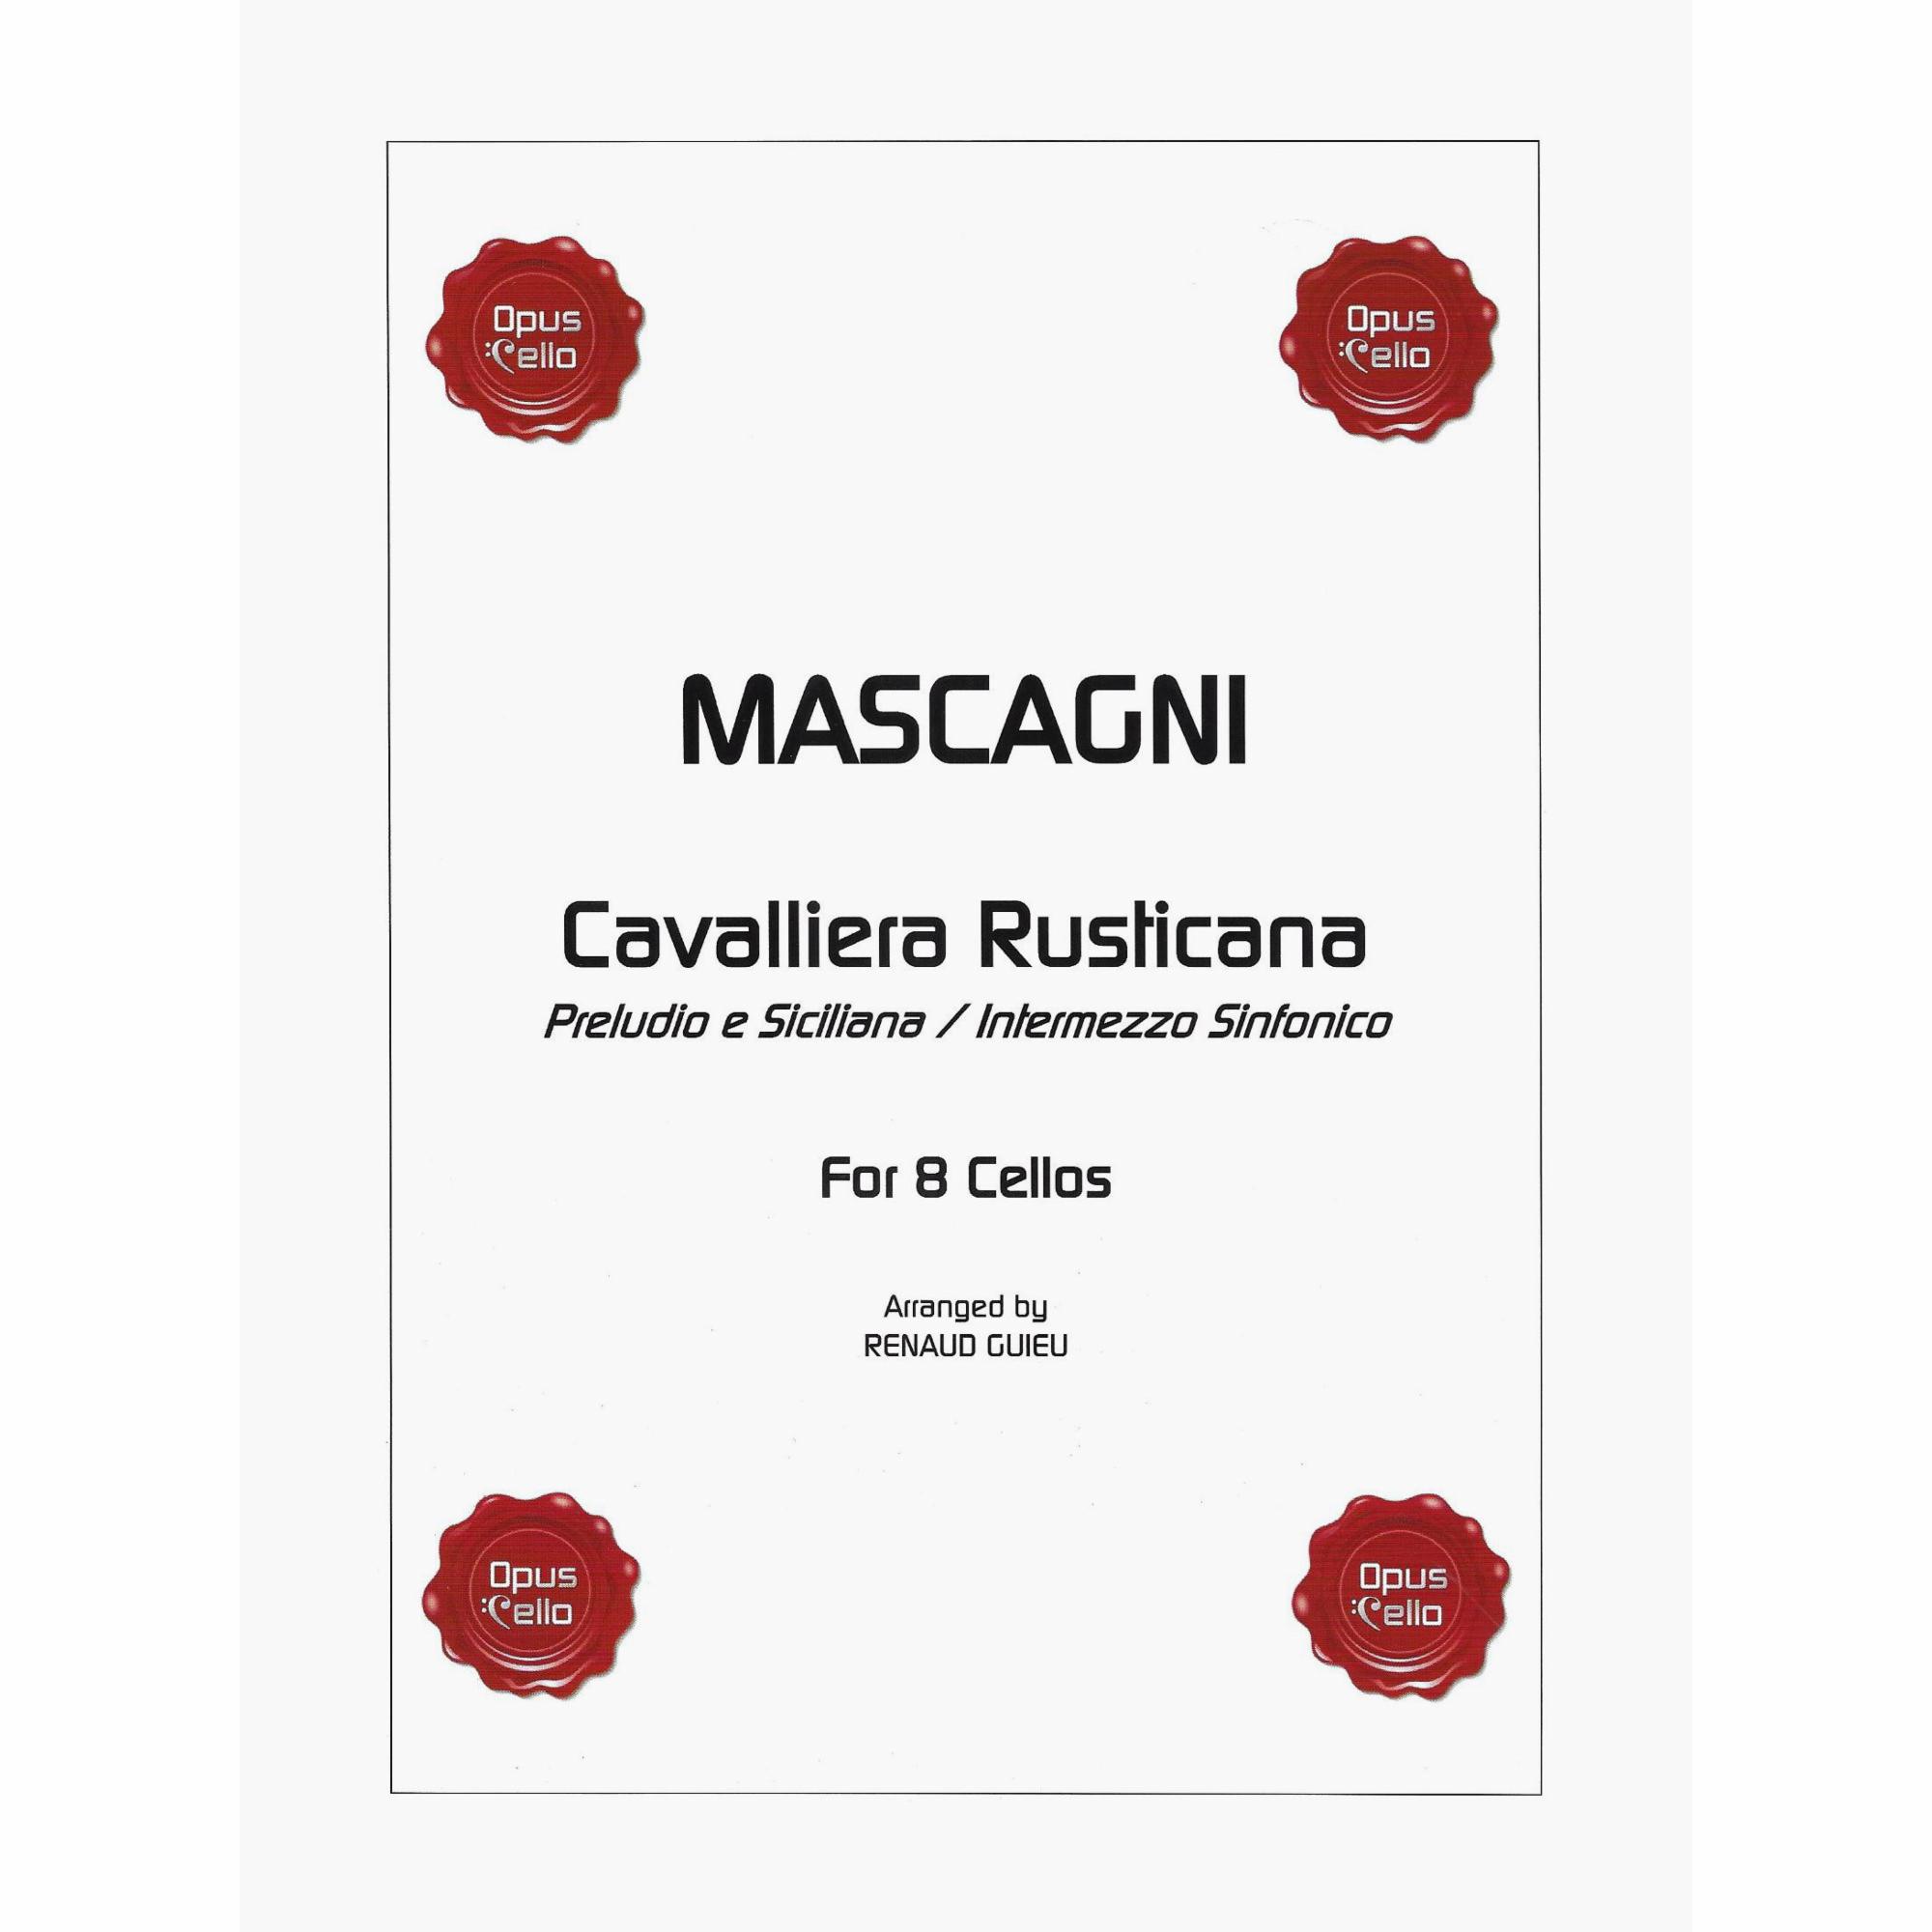 Mascagni -- Cavalliera Rusticana for Eight Cellos